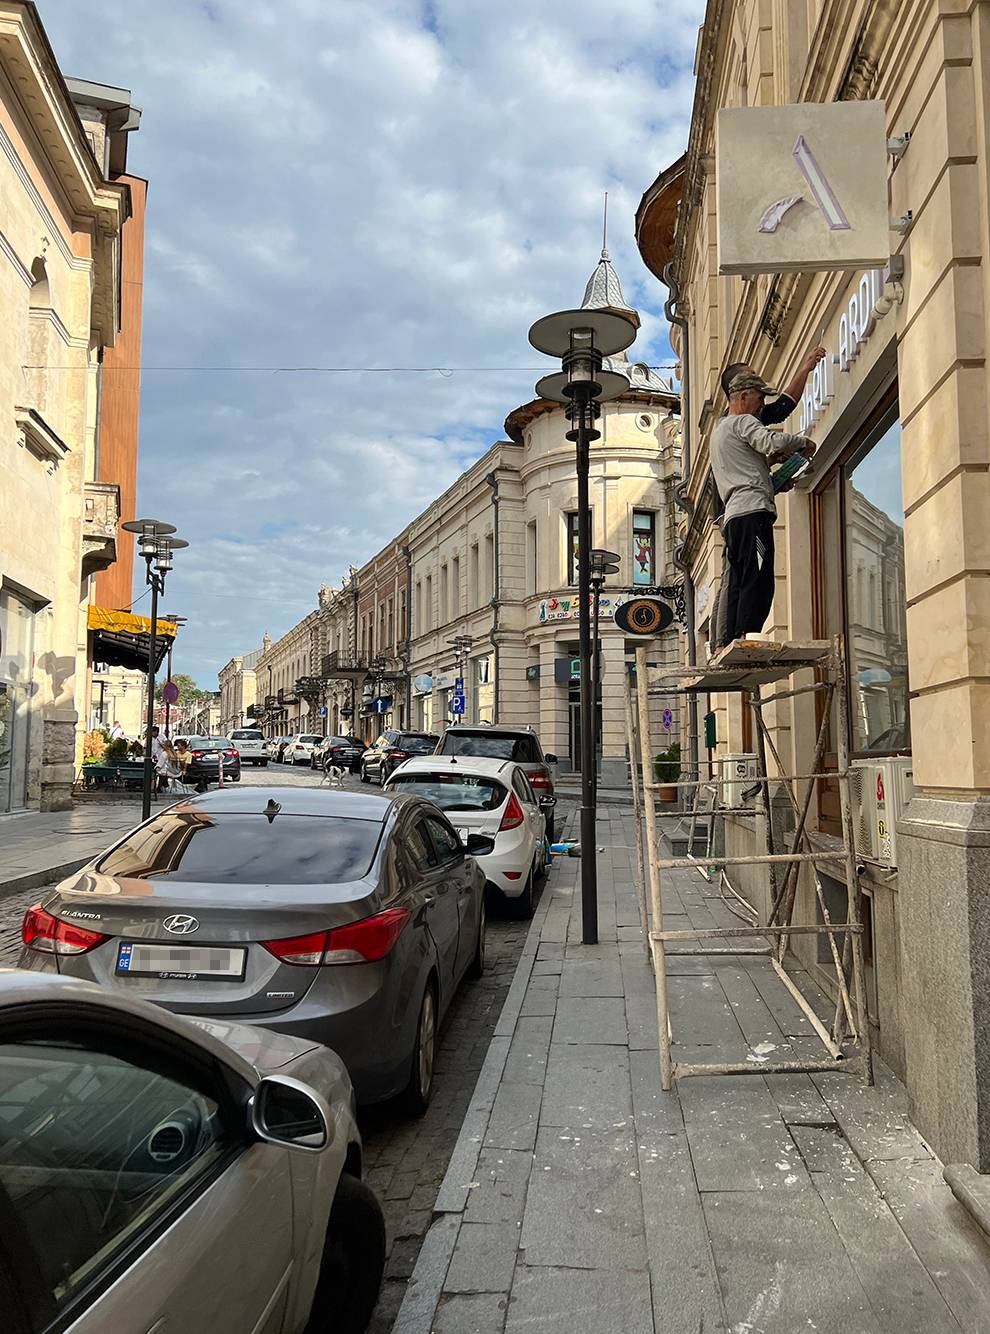 Улица Пушкина — одна из самых оживленных в Старом городе. Здесь я часто видела путешественников и туристические группы с гидами